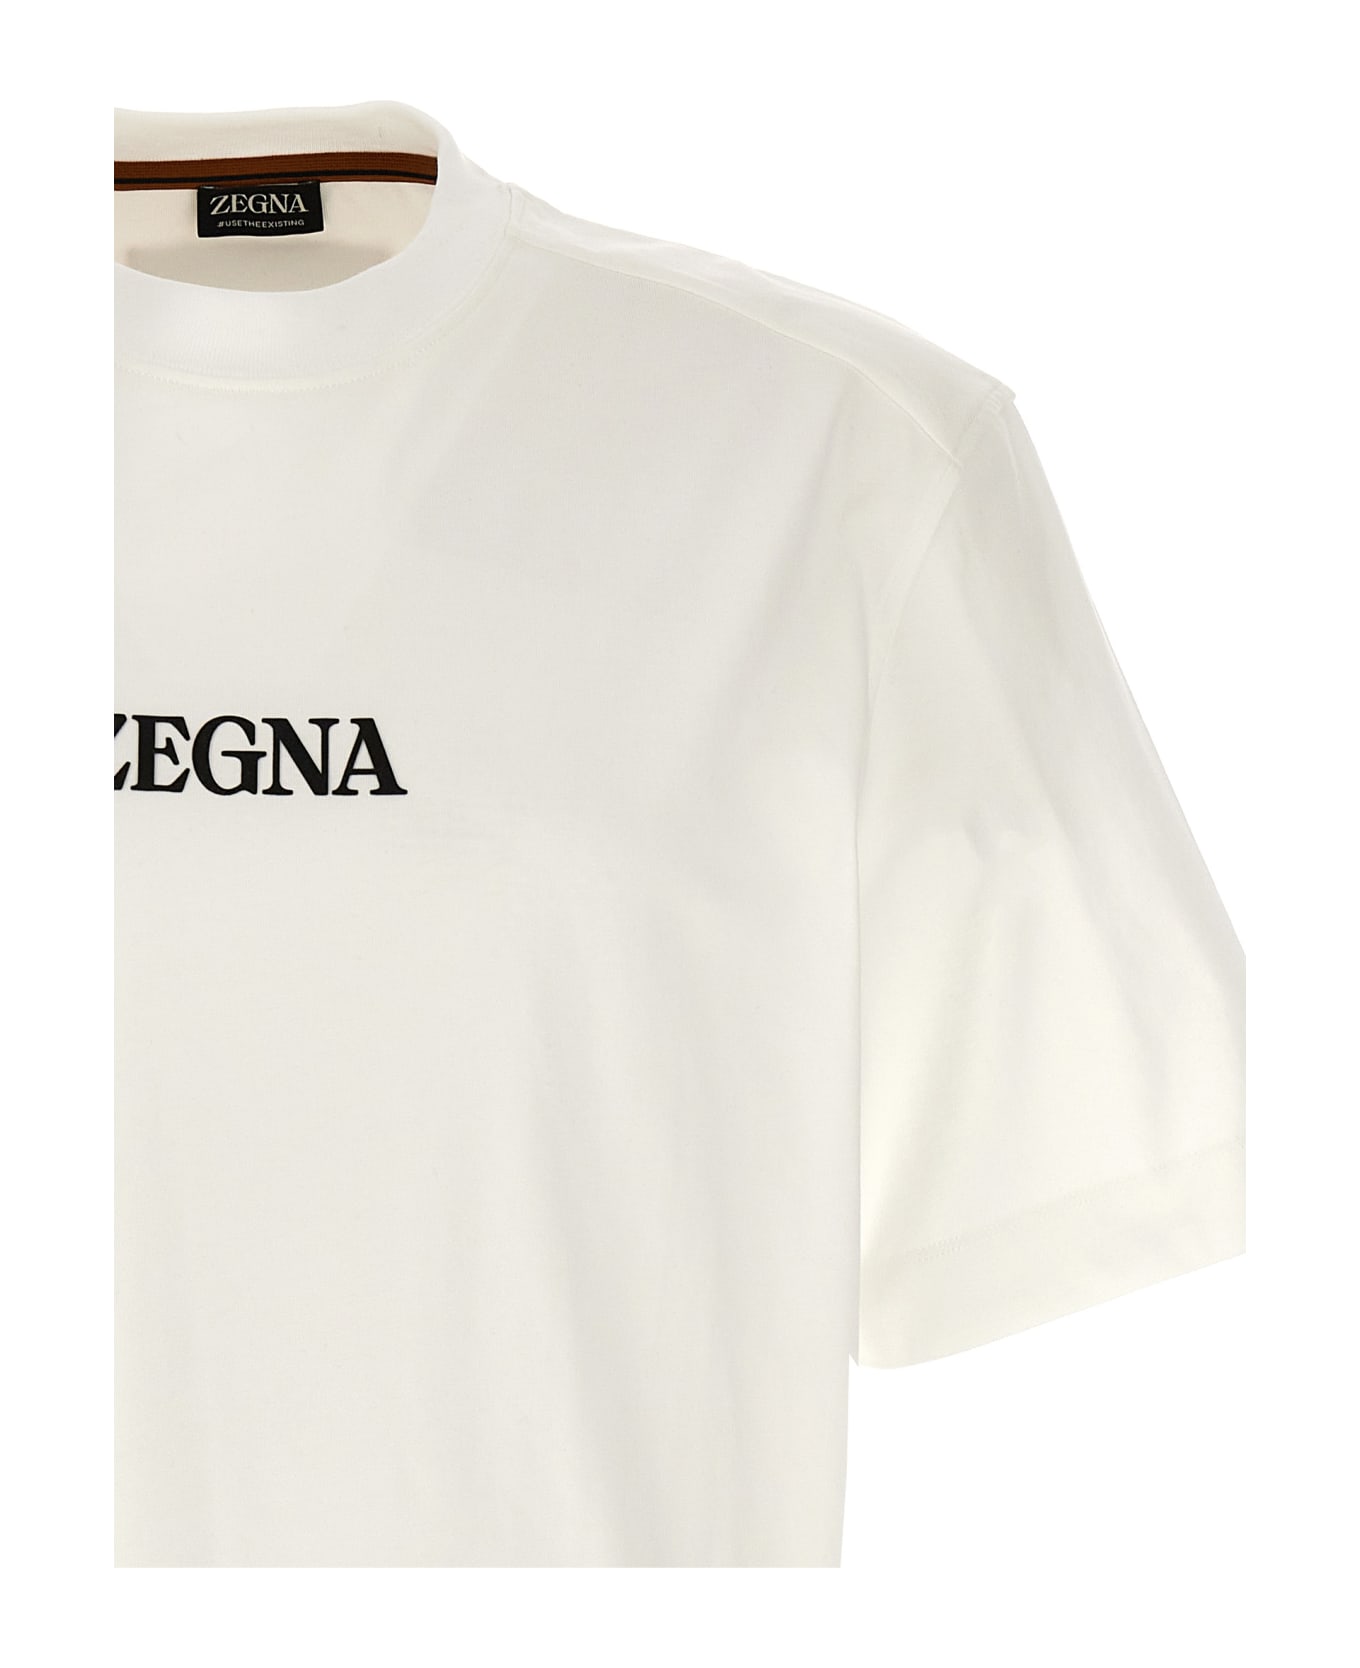 Zegna Logo T-shirt - White